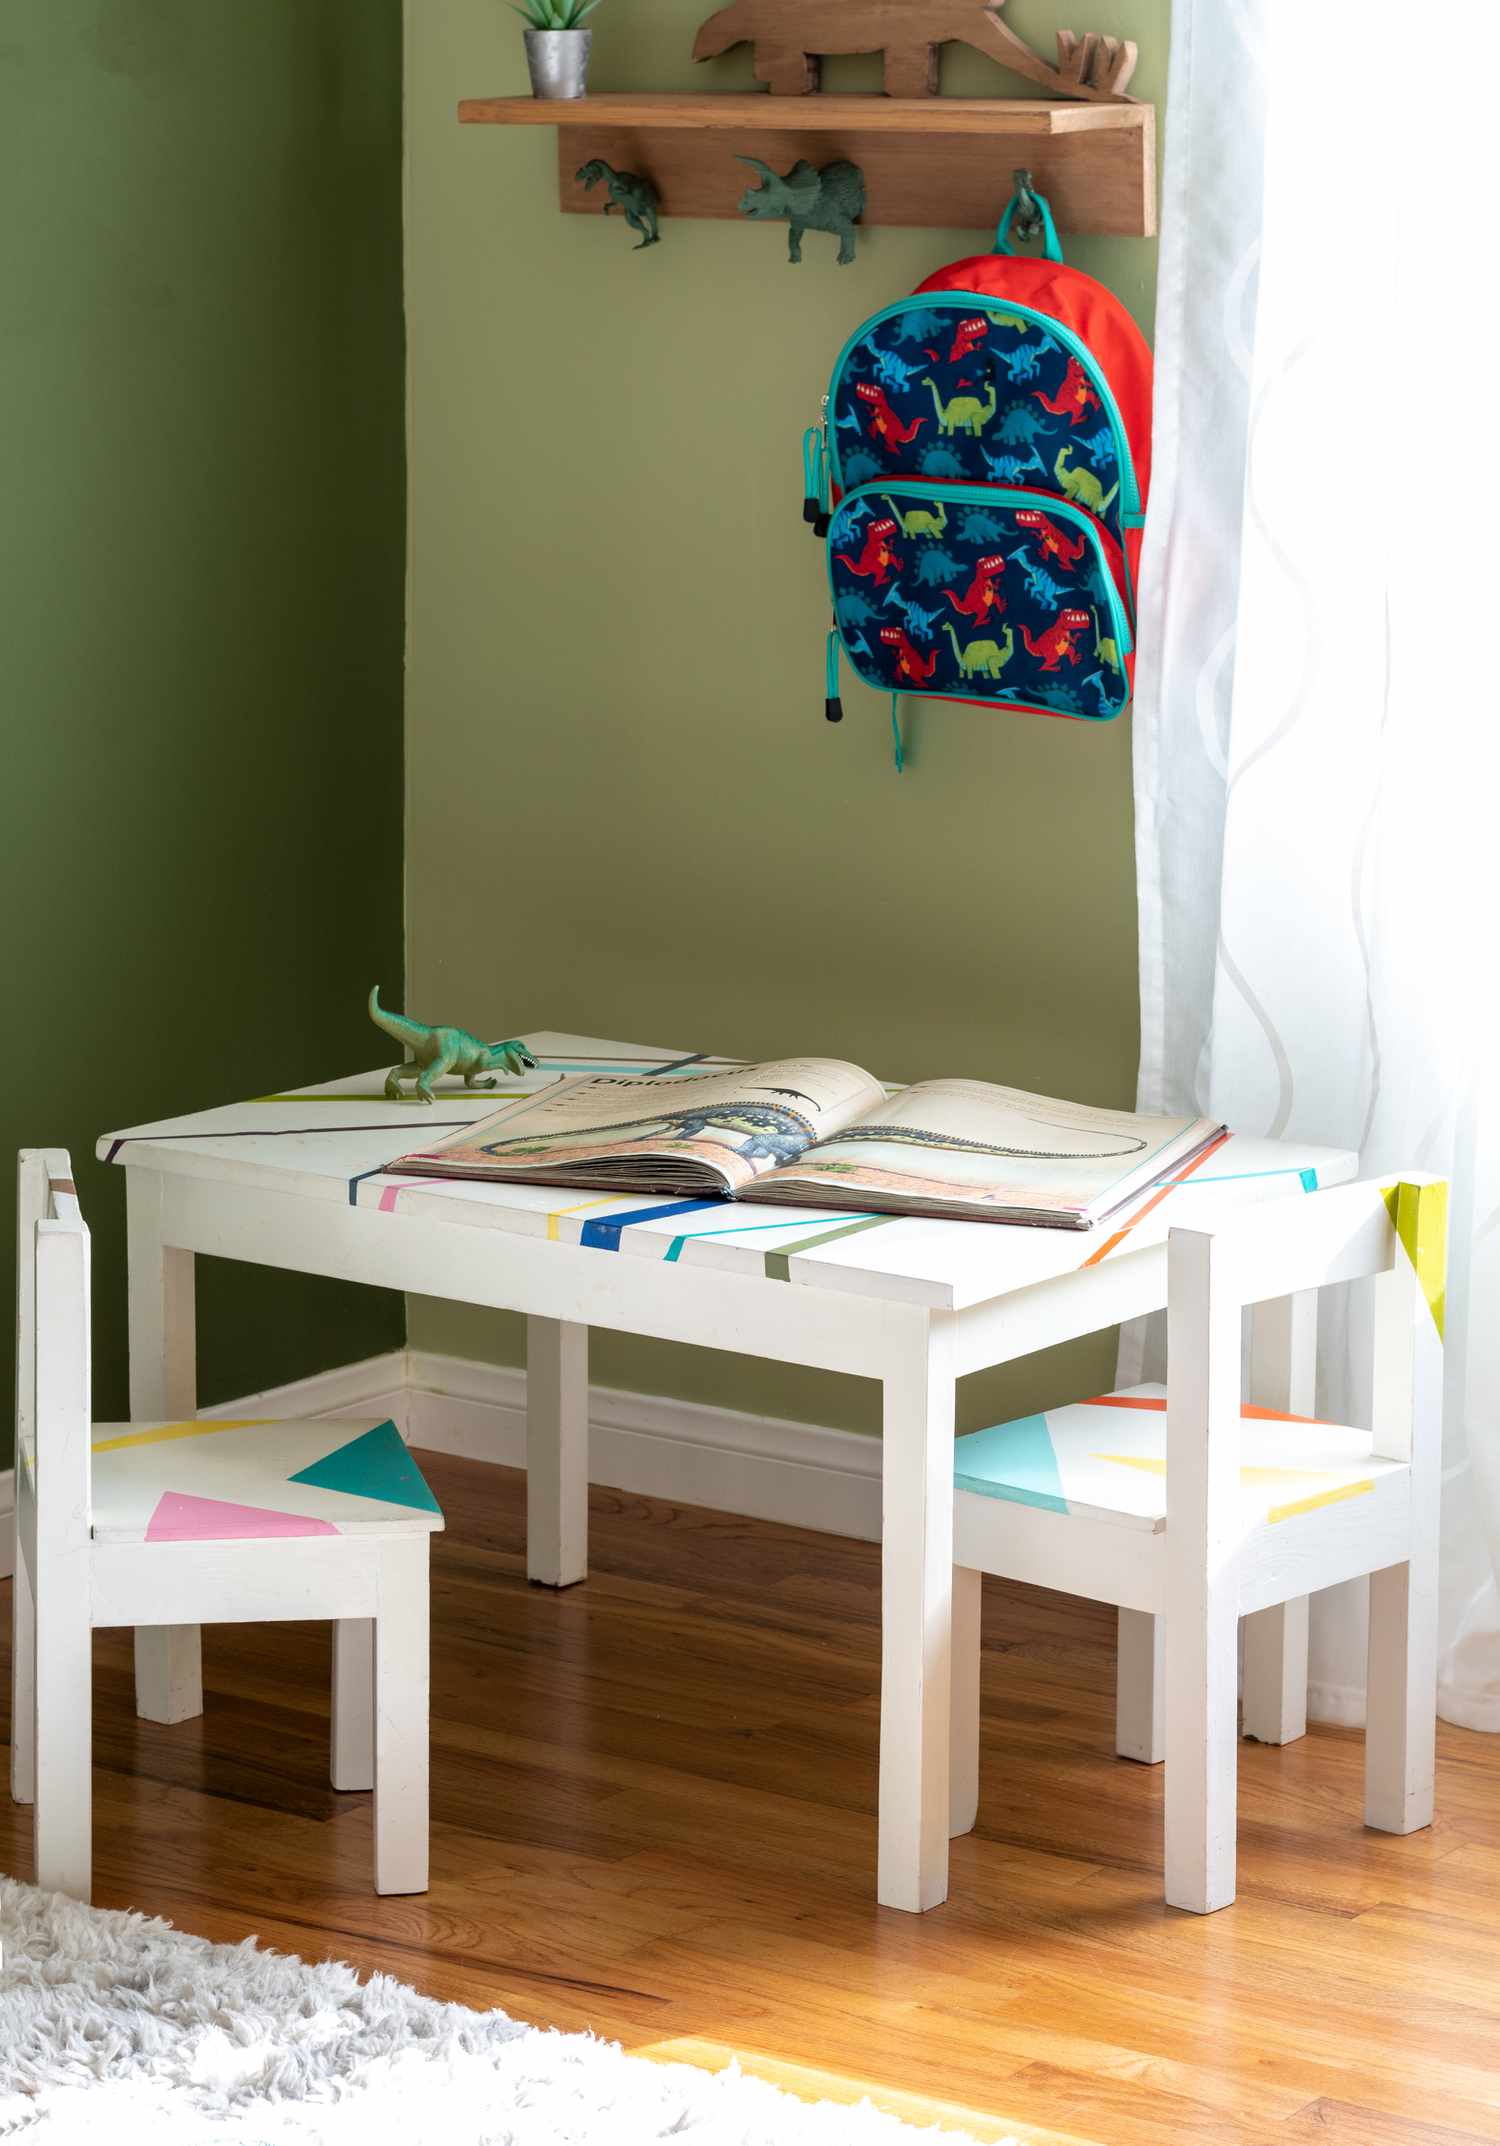 Quarto infantil com tema de dinossauro, com escrivaninha e cadeiras pintadas